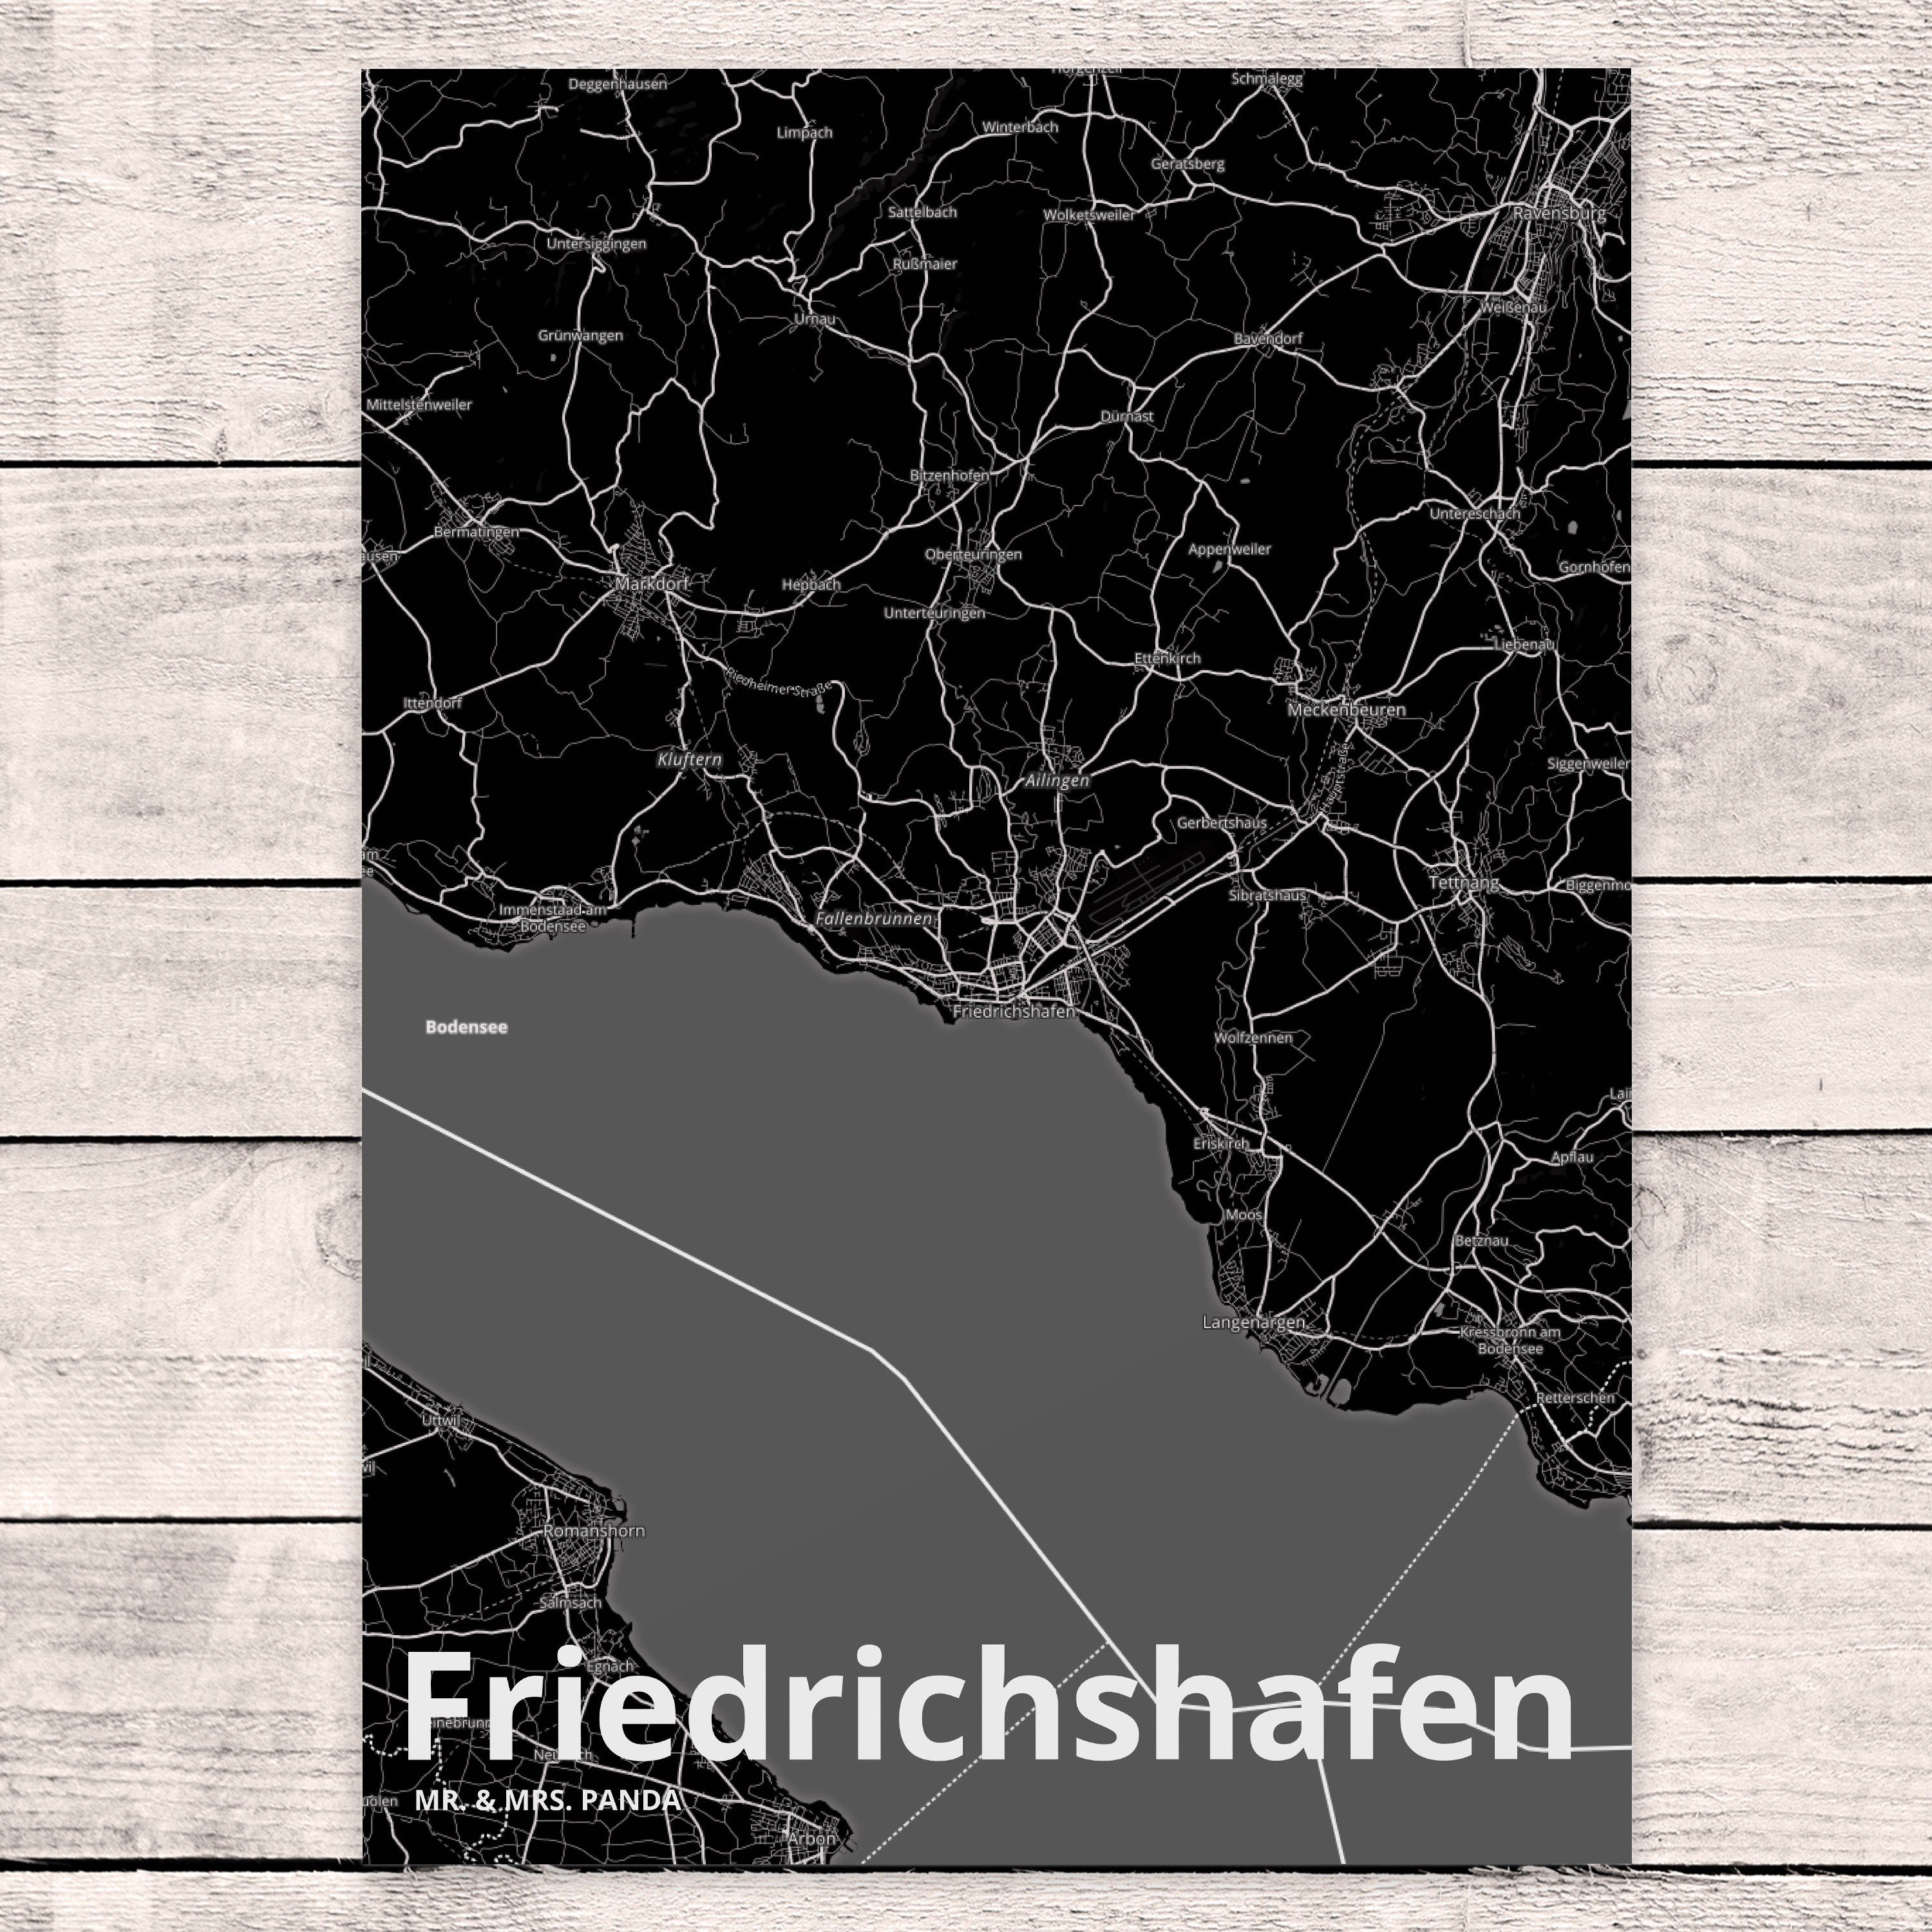 Mr. & Mrs. Friedrichshafen - Dorf, Dorf Karte Stadt Lan Panda Geschenk, Ansichtskarte, Postkarte